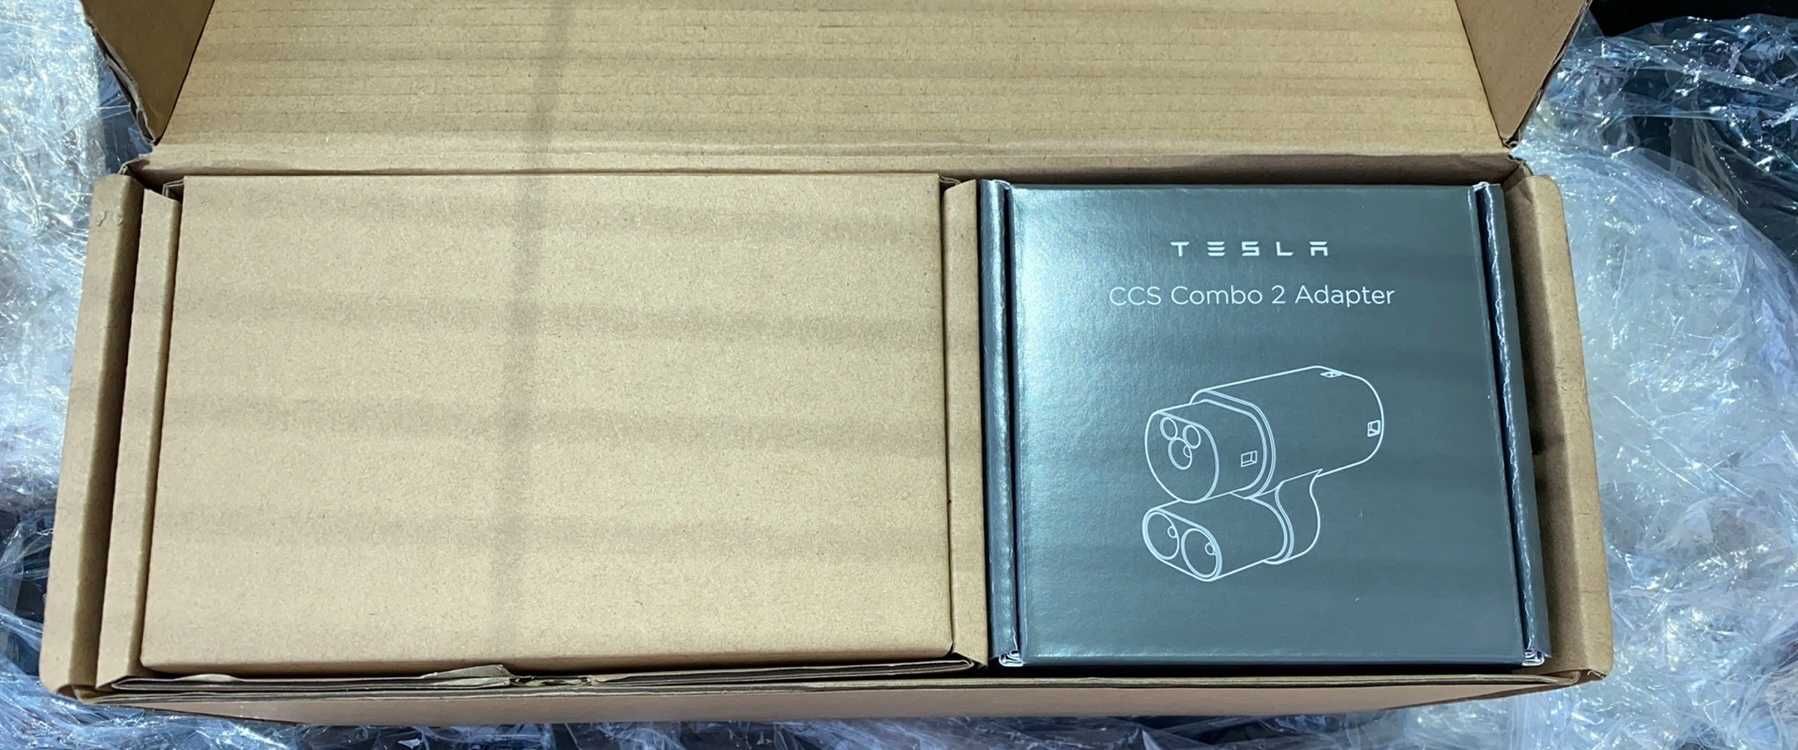 Комплект Tesla CCS ретрофит (upgrade) модуль для модель S X